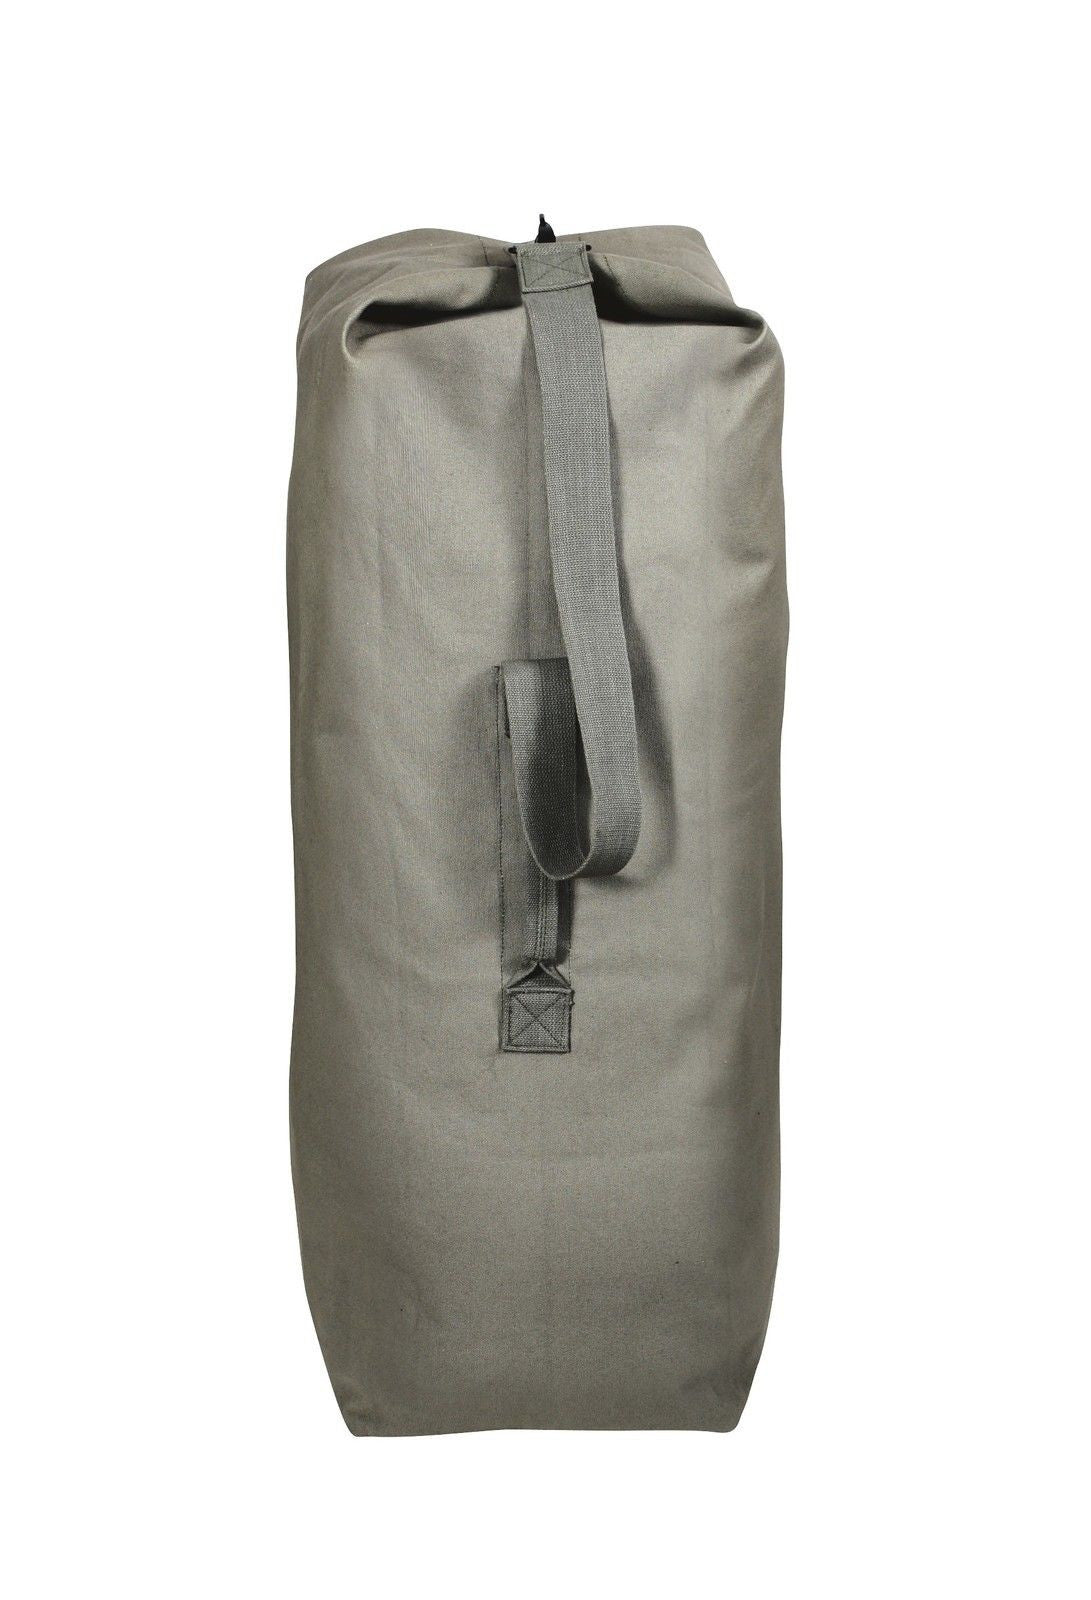 White Cap Waxed Canvas Duffle Bag | Waxed Canvas Bag | Rogue Industries